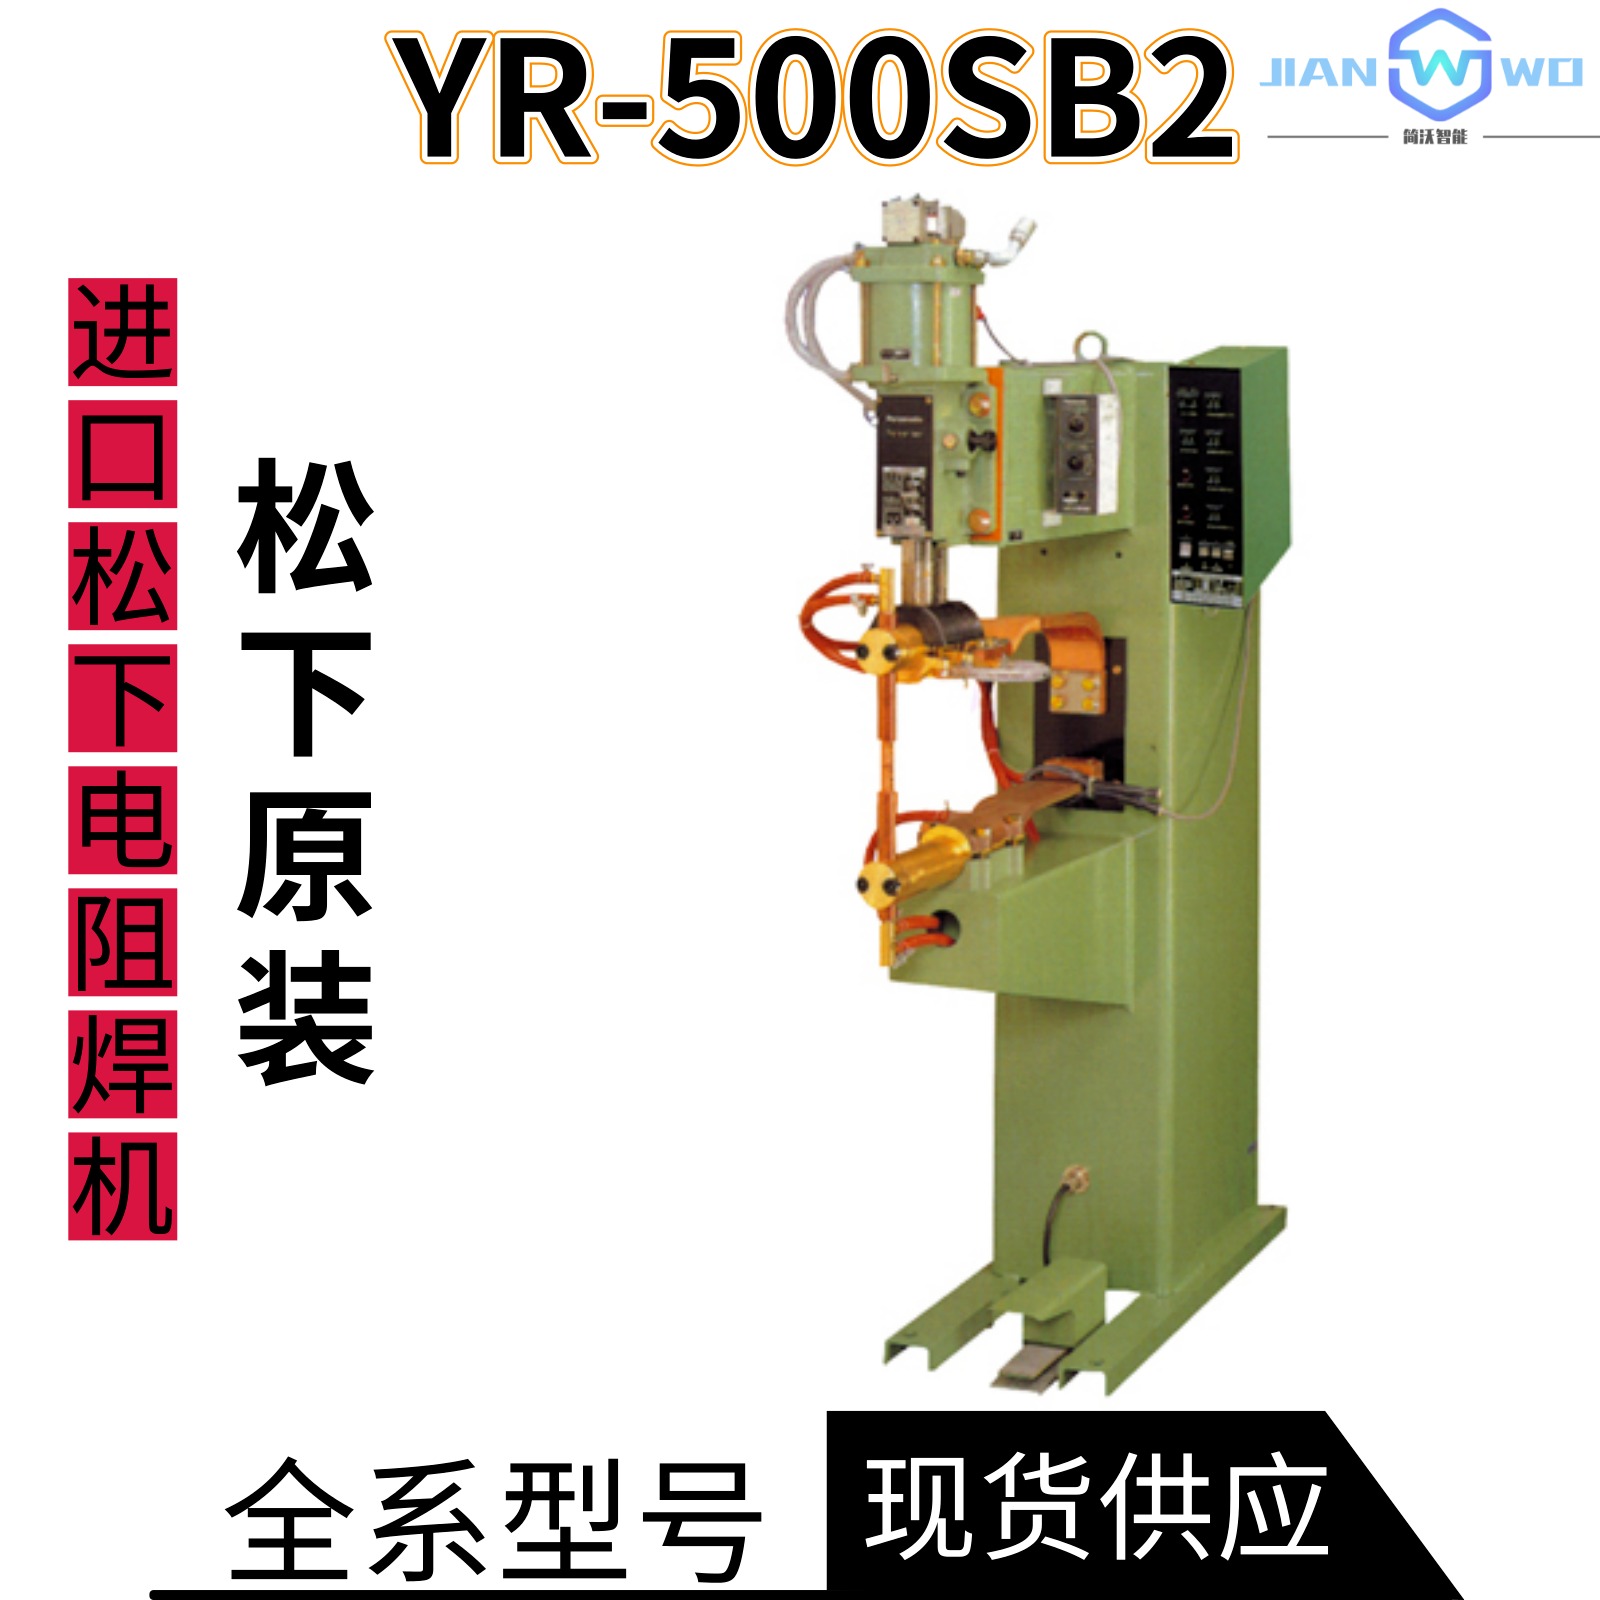 原装进口松下电阻焊机YR-500SB2实现缝焊点焊凸焊